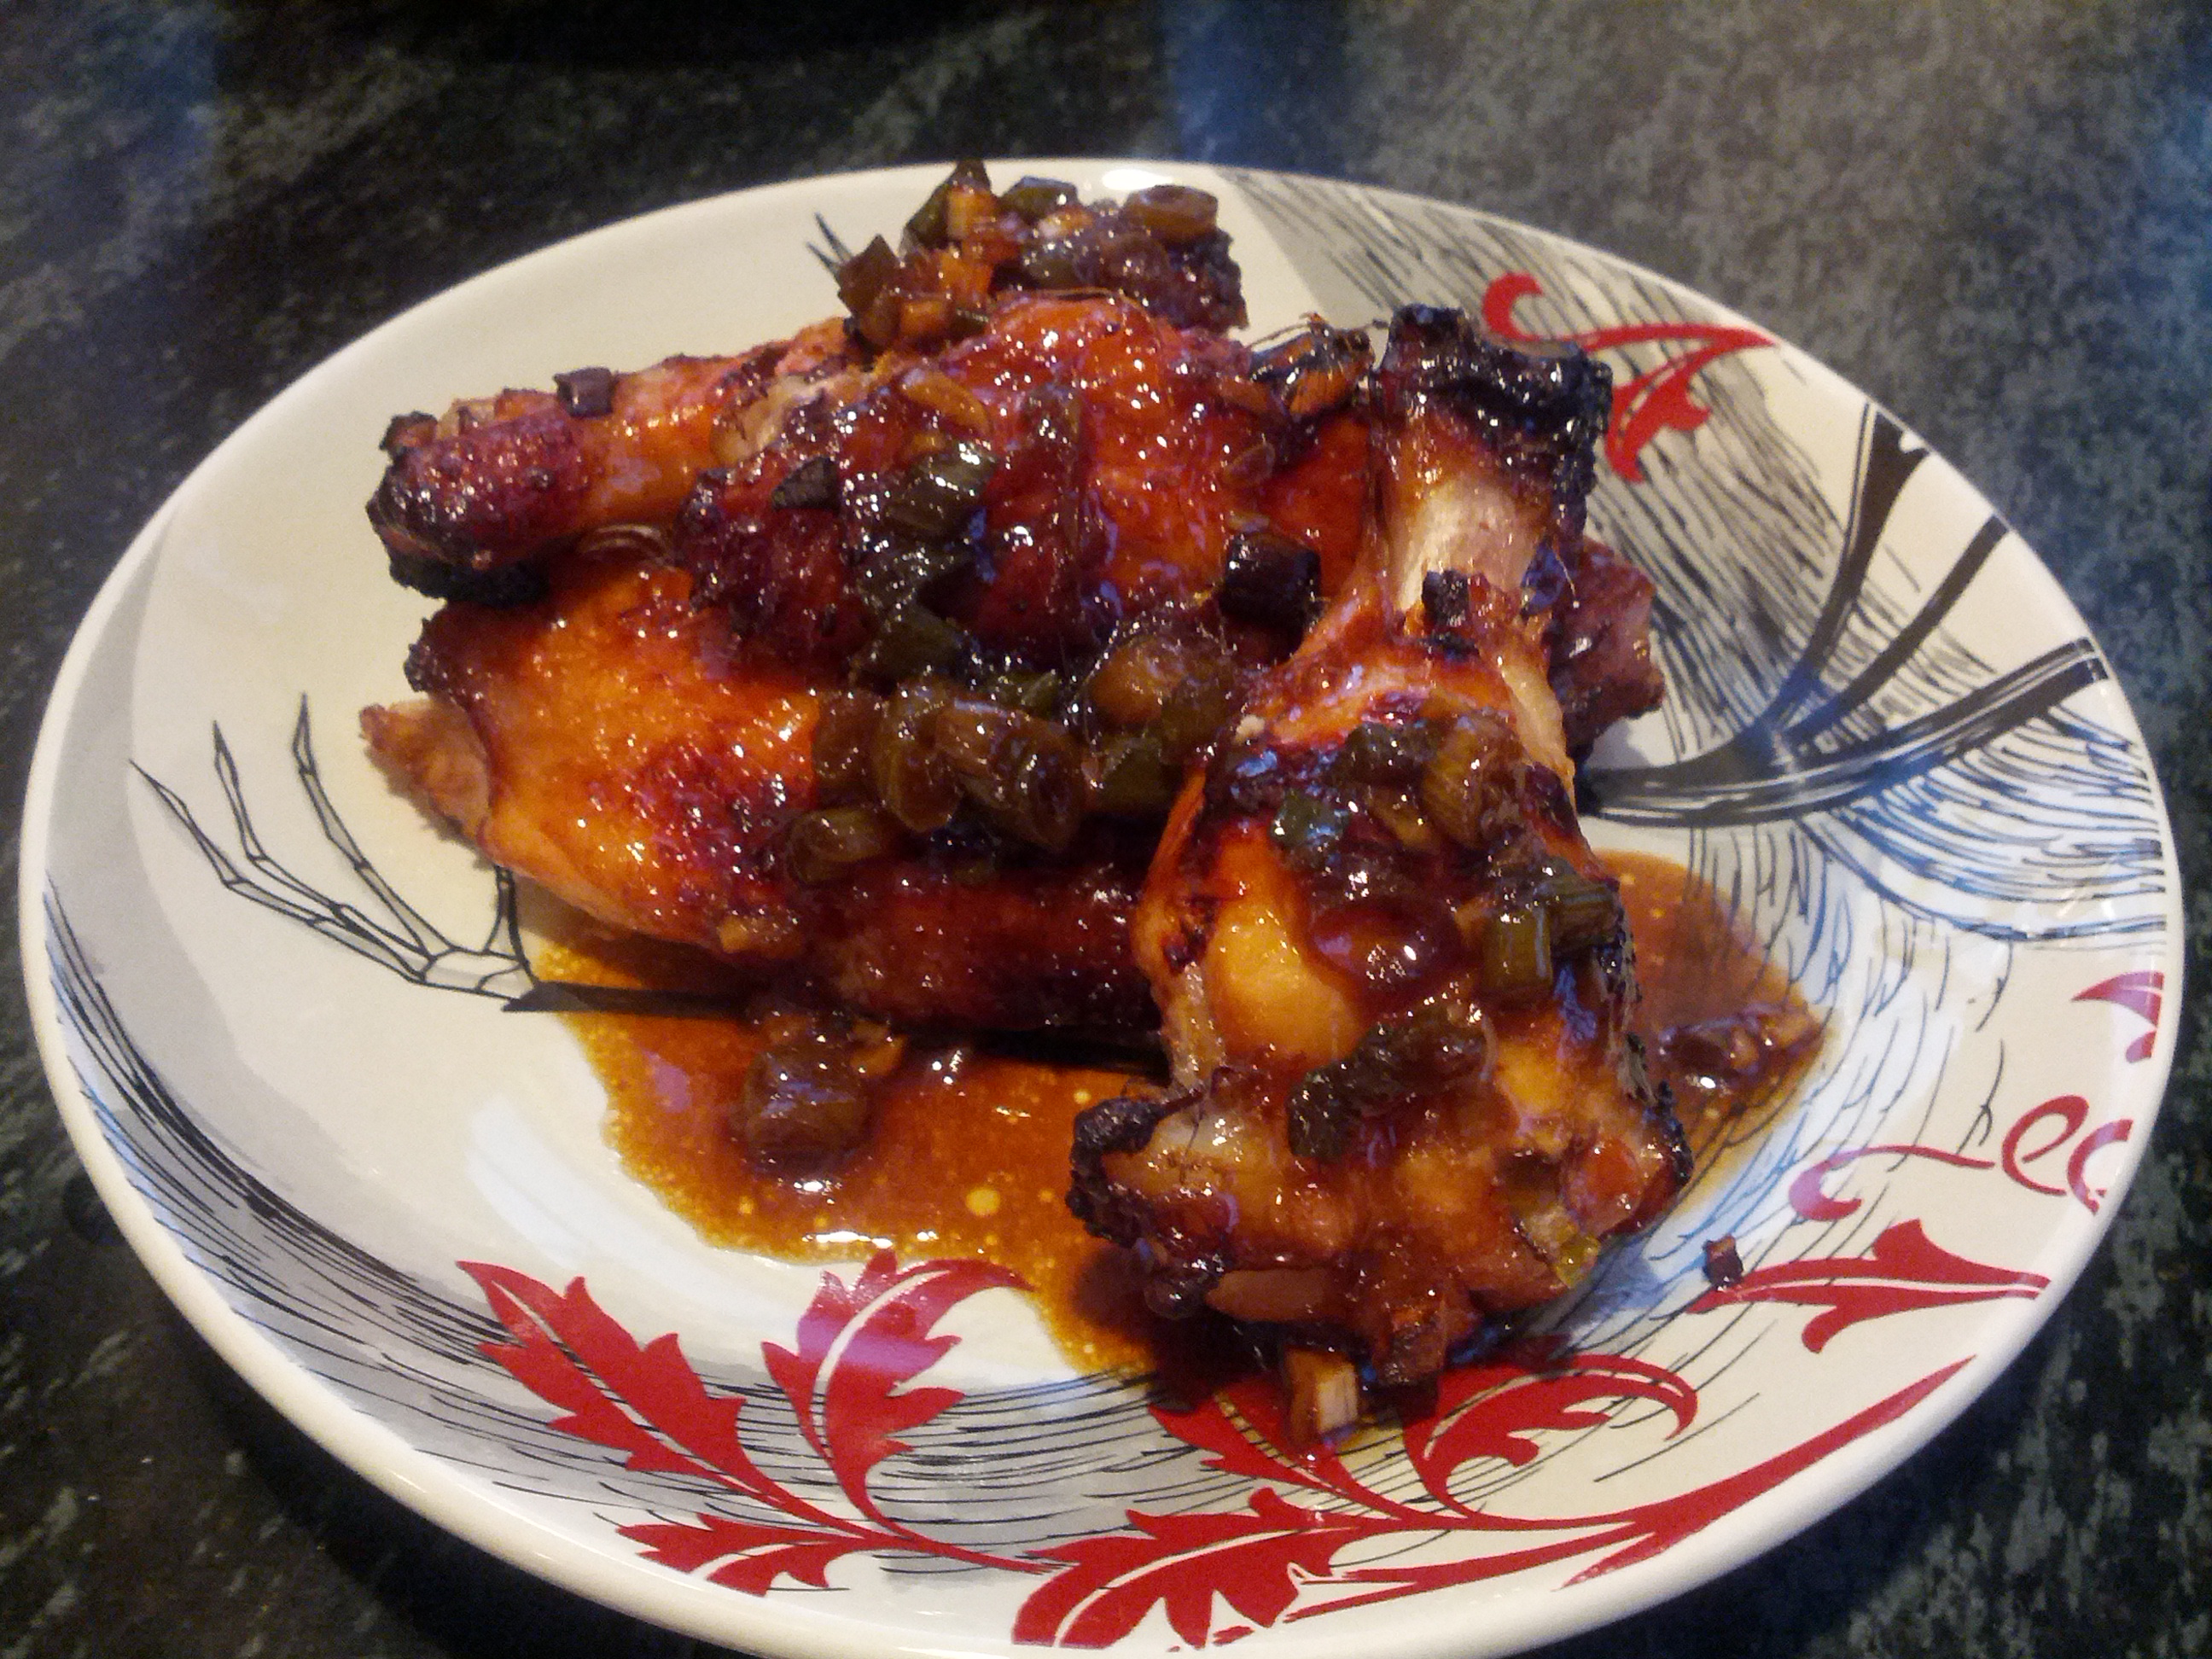 Honey-soy glazed chicken wings